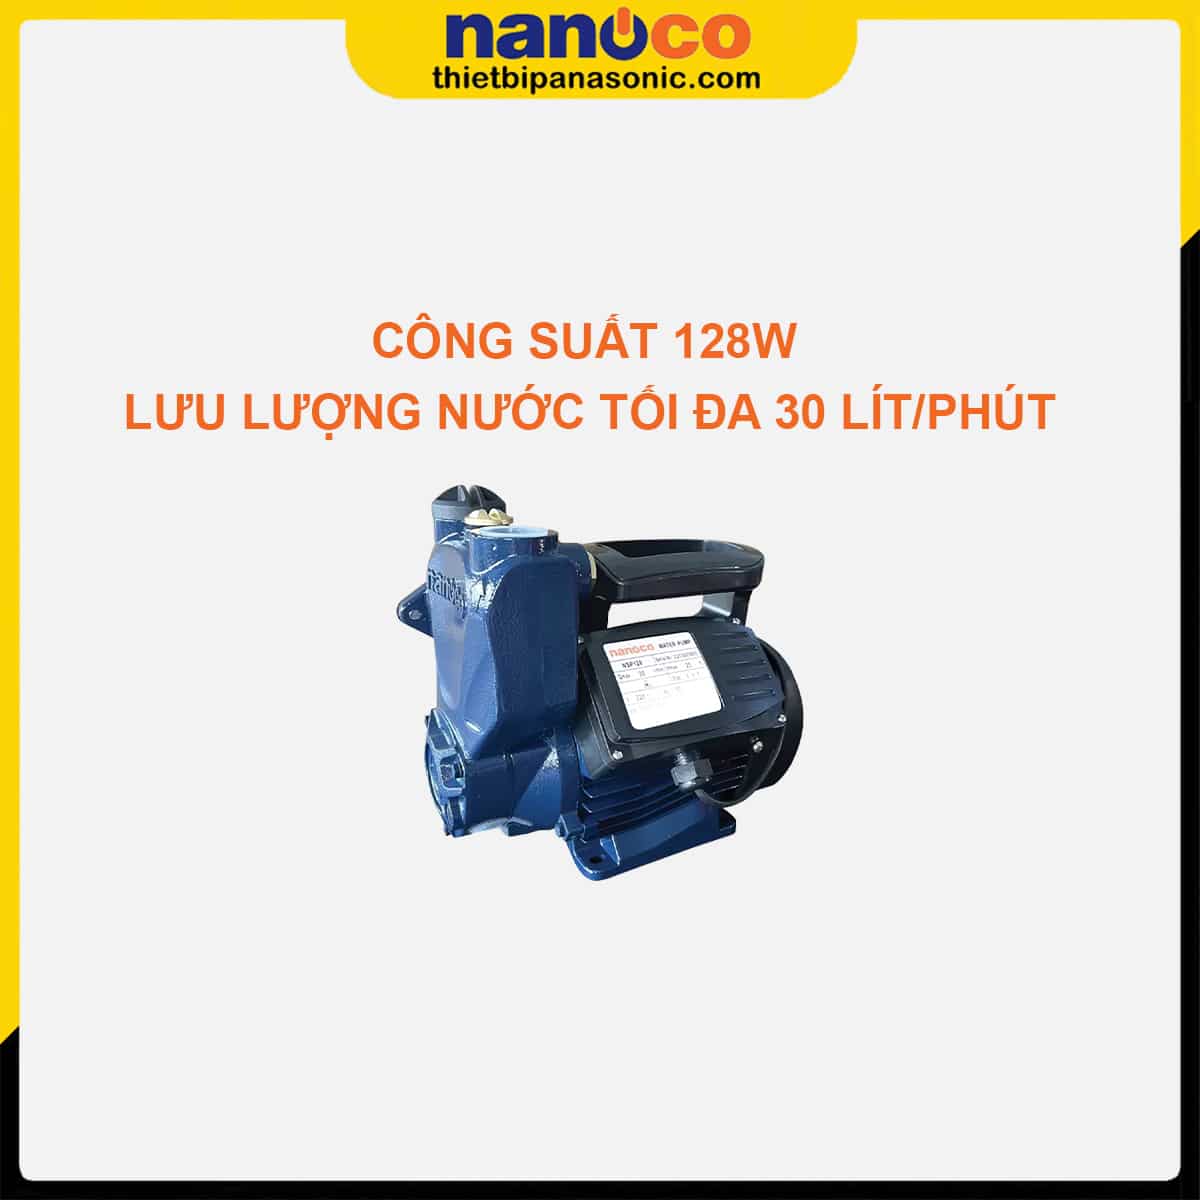 Máy bơm đẩy cao Nanoco NSP128 có công suất 128W cùng lưu lượng nước đặt 30 lít/phút